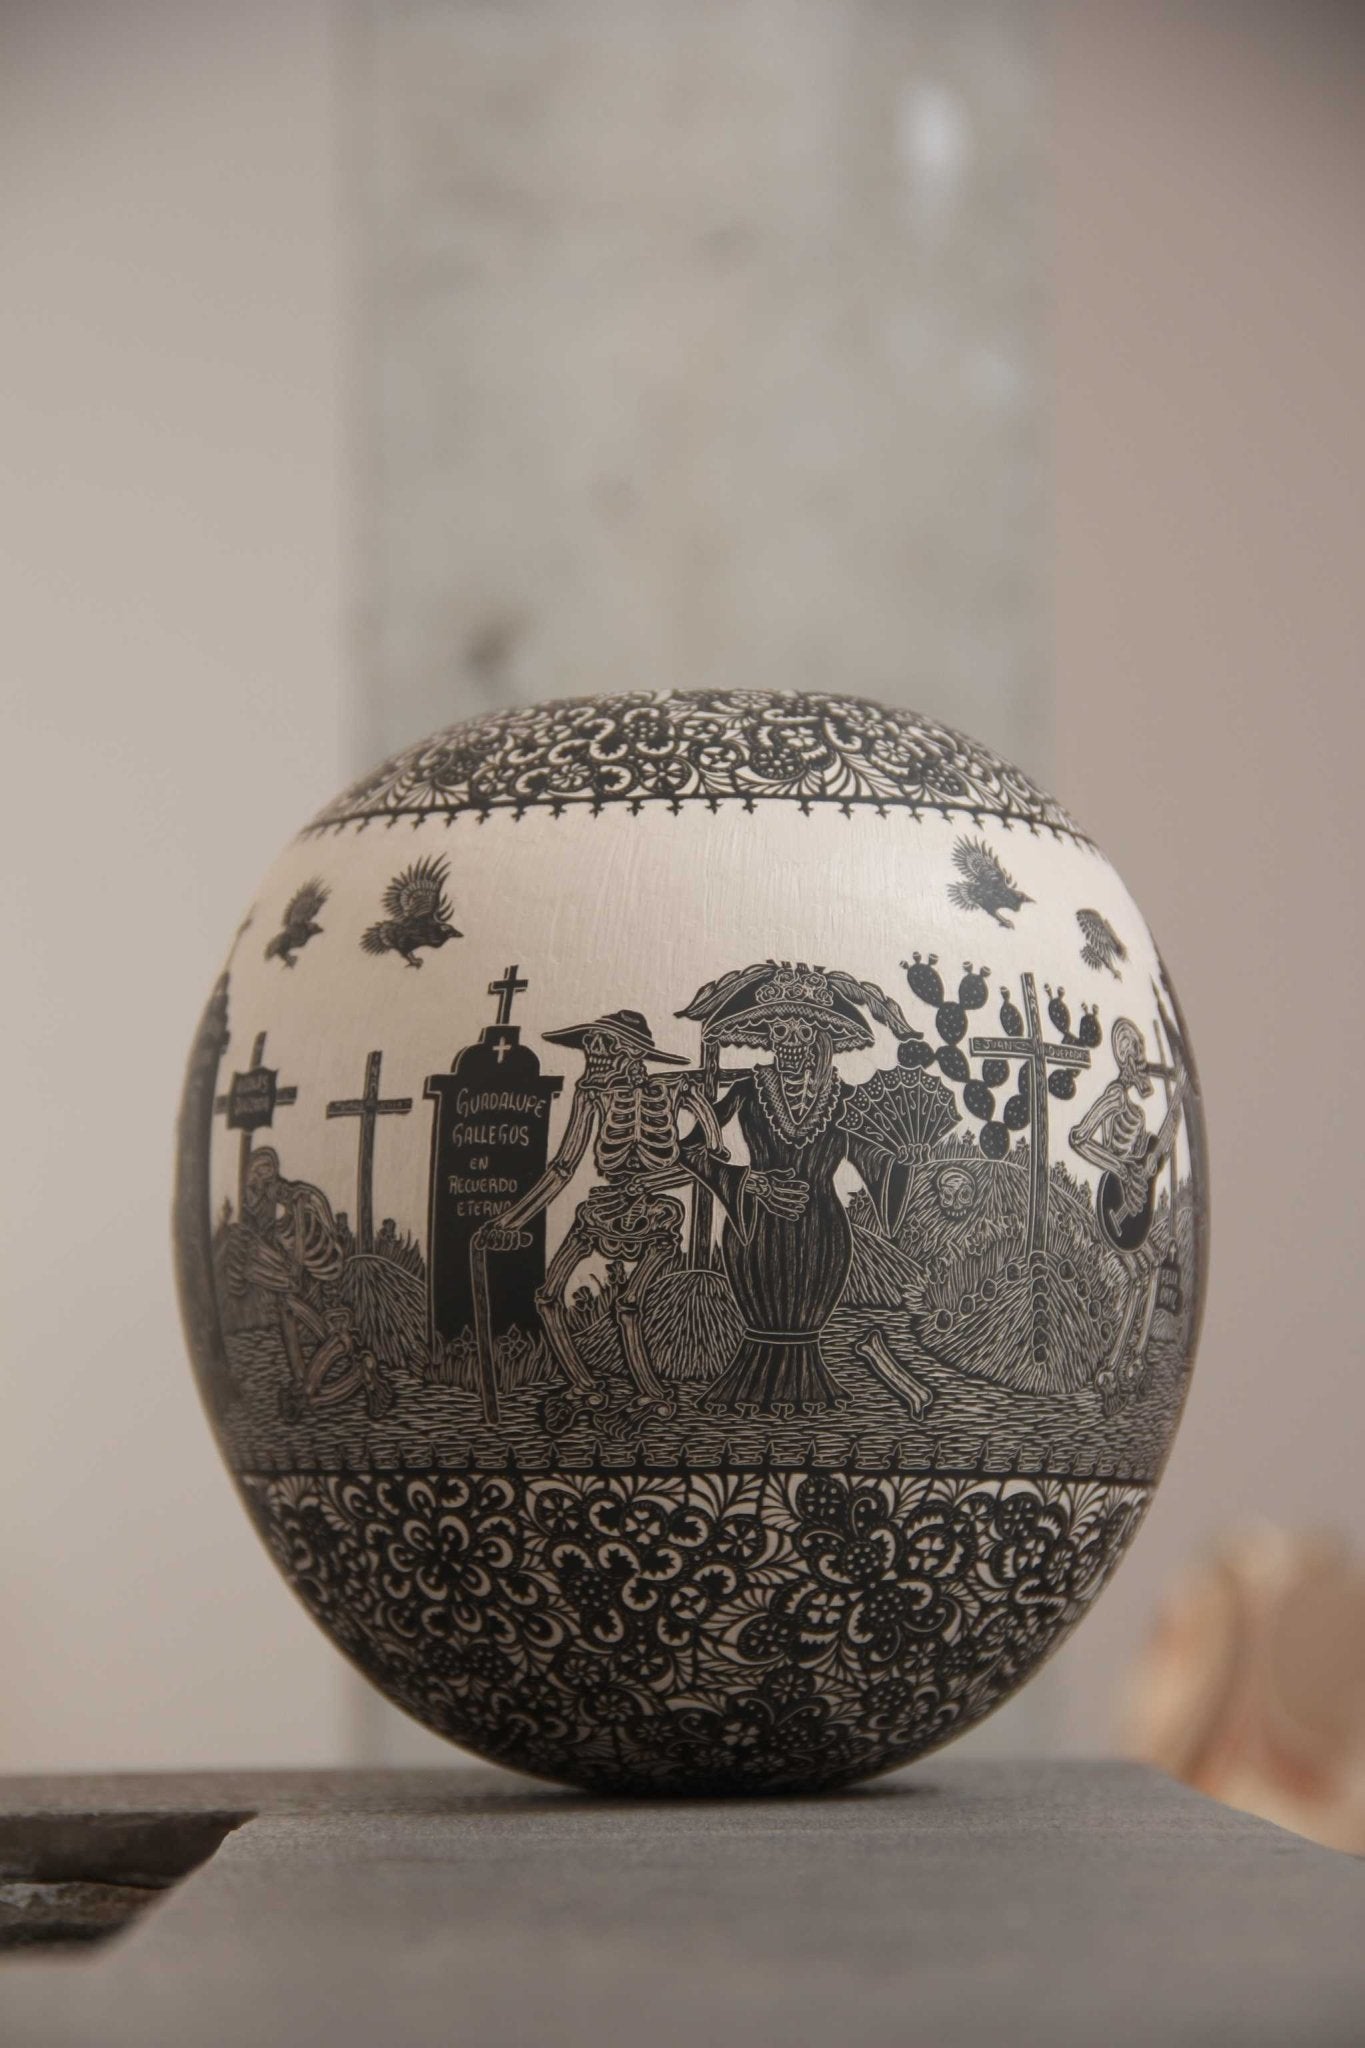 Ceramica Mata Ortiz - Riposa in pace - Giorno - Arte Huichol - Marakame